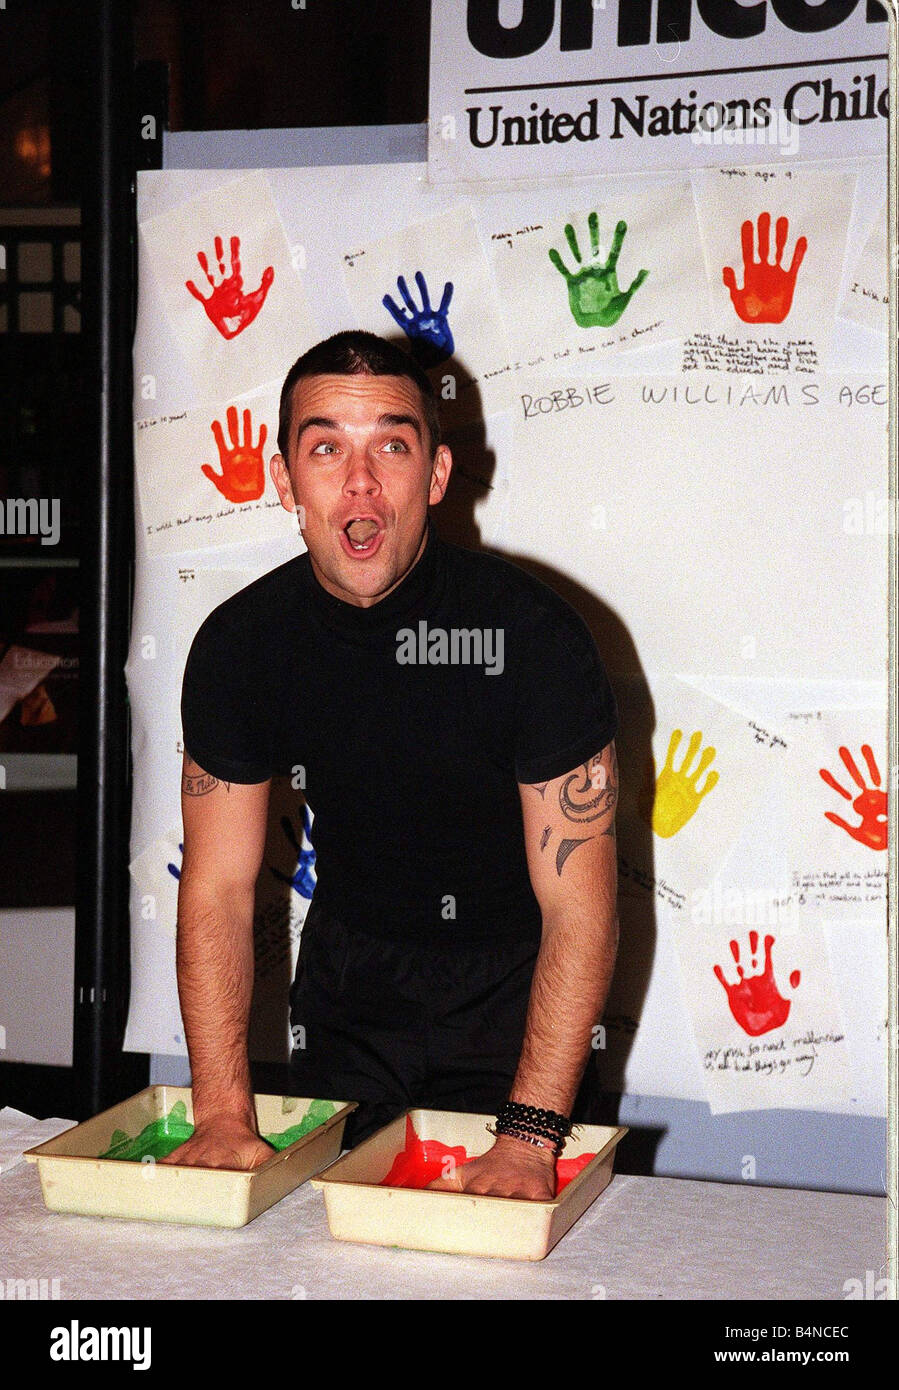 Robbie Williams fait salir les mains en novembre 1999 pour les droits des enfants à Bethnal Green Musée des enfants pour l'UNICEF trempant ses mains dans la peinture pour laisser sa main imprimer Banque D'Images